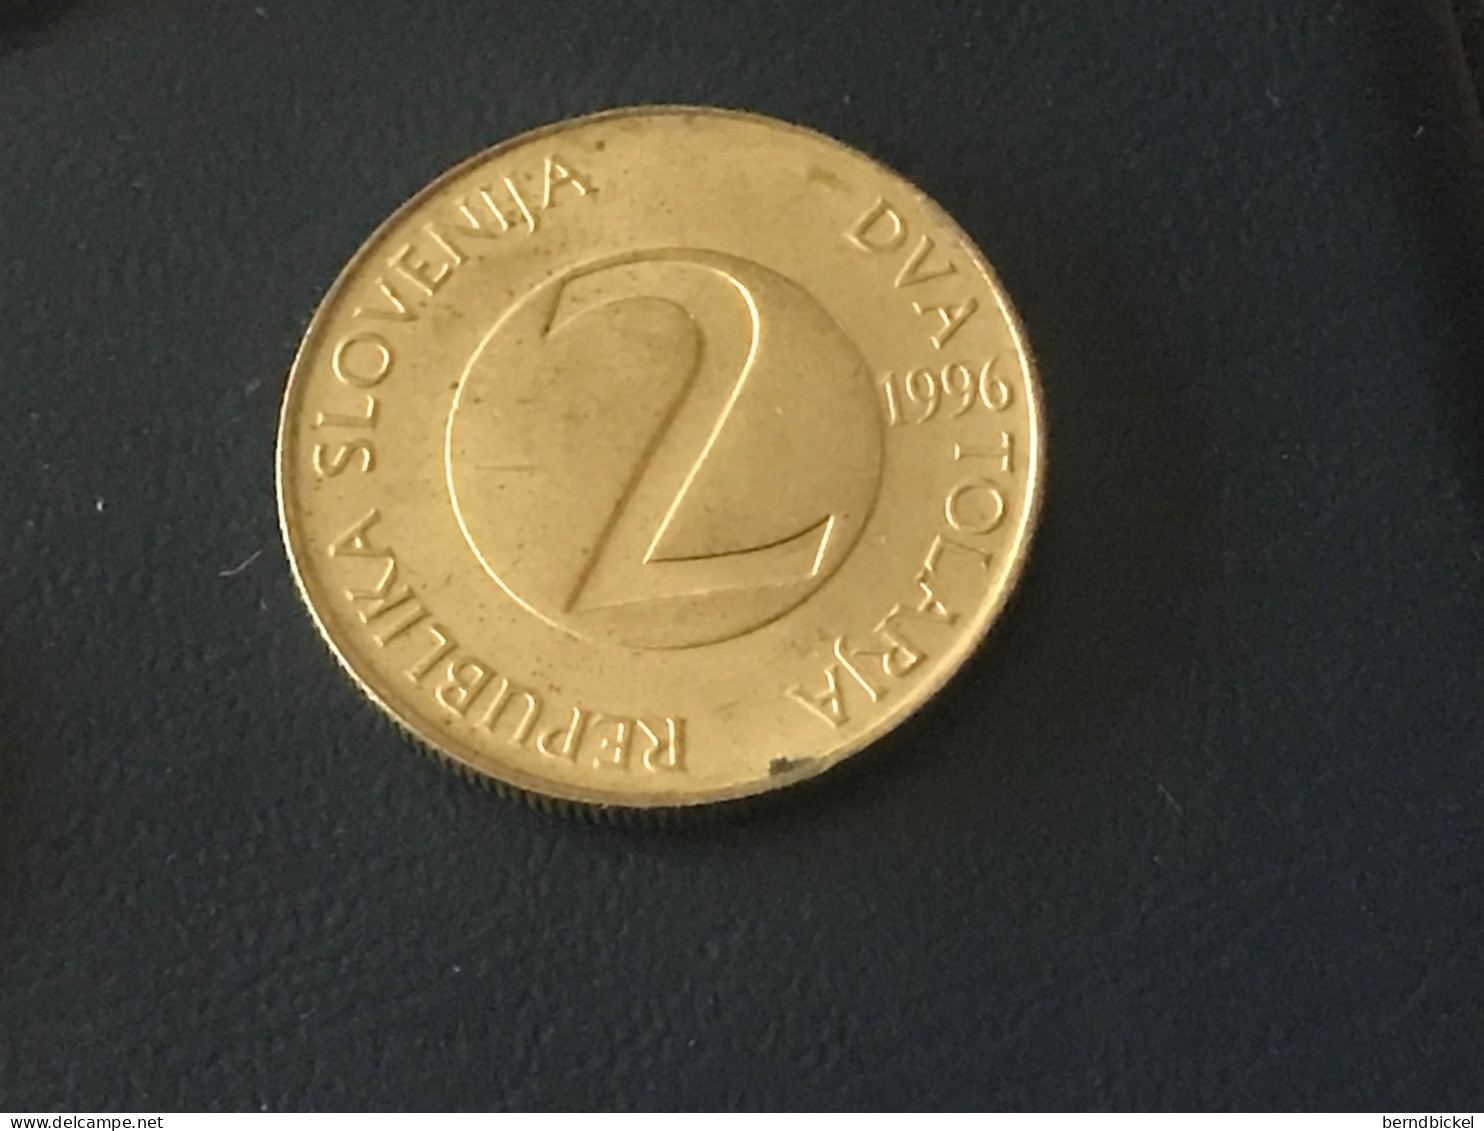 Münze Münzen Umlaufmünze Slowenien 2 Tolar 1996 - Eslovenia